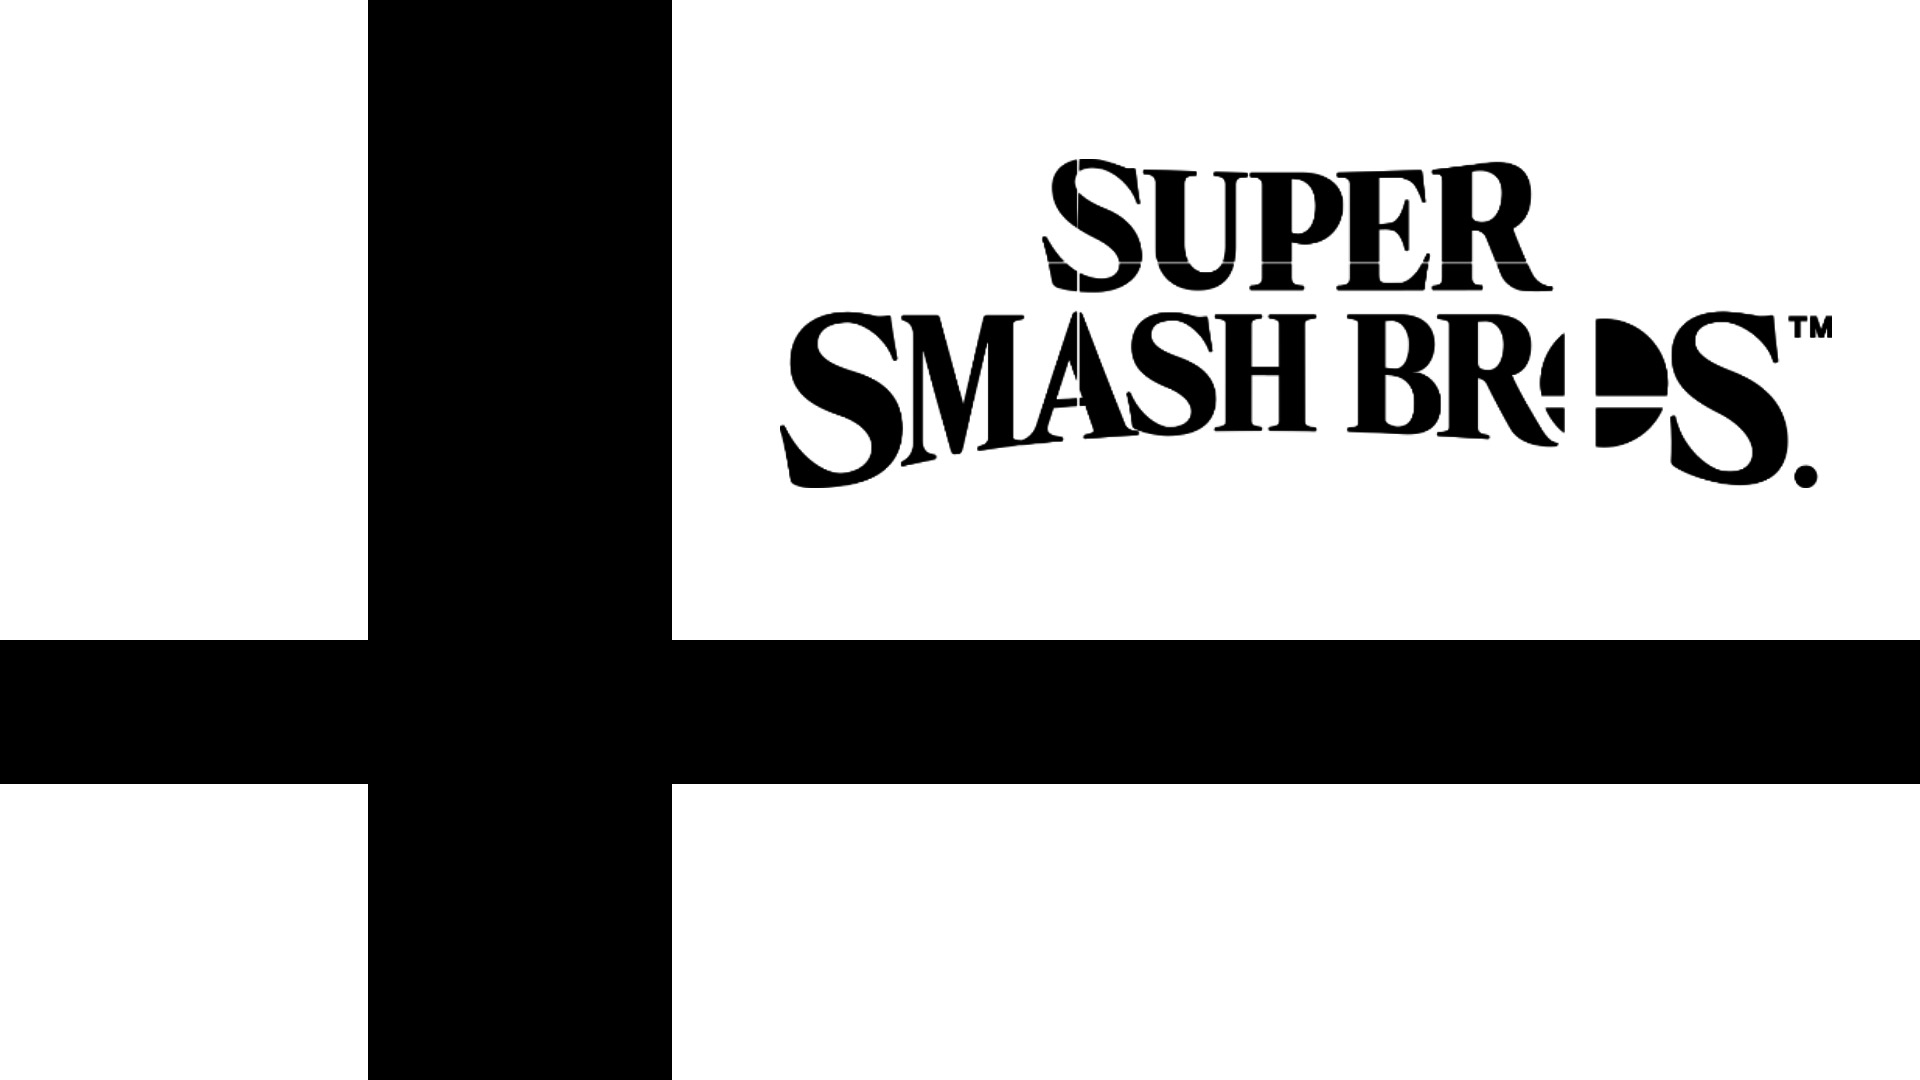 Papel de Parede Jogo Super Smash Bros ultimate!!